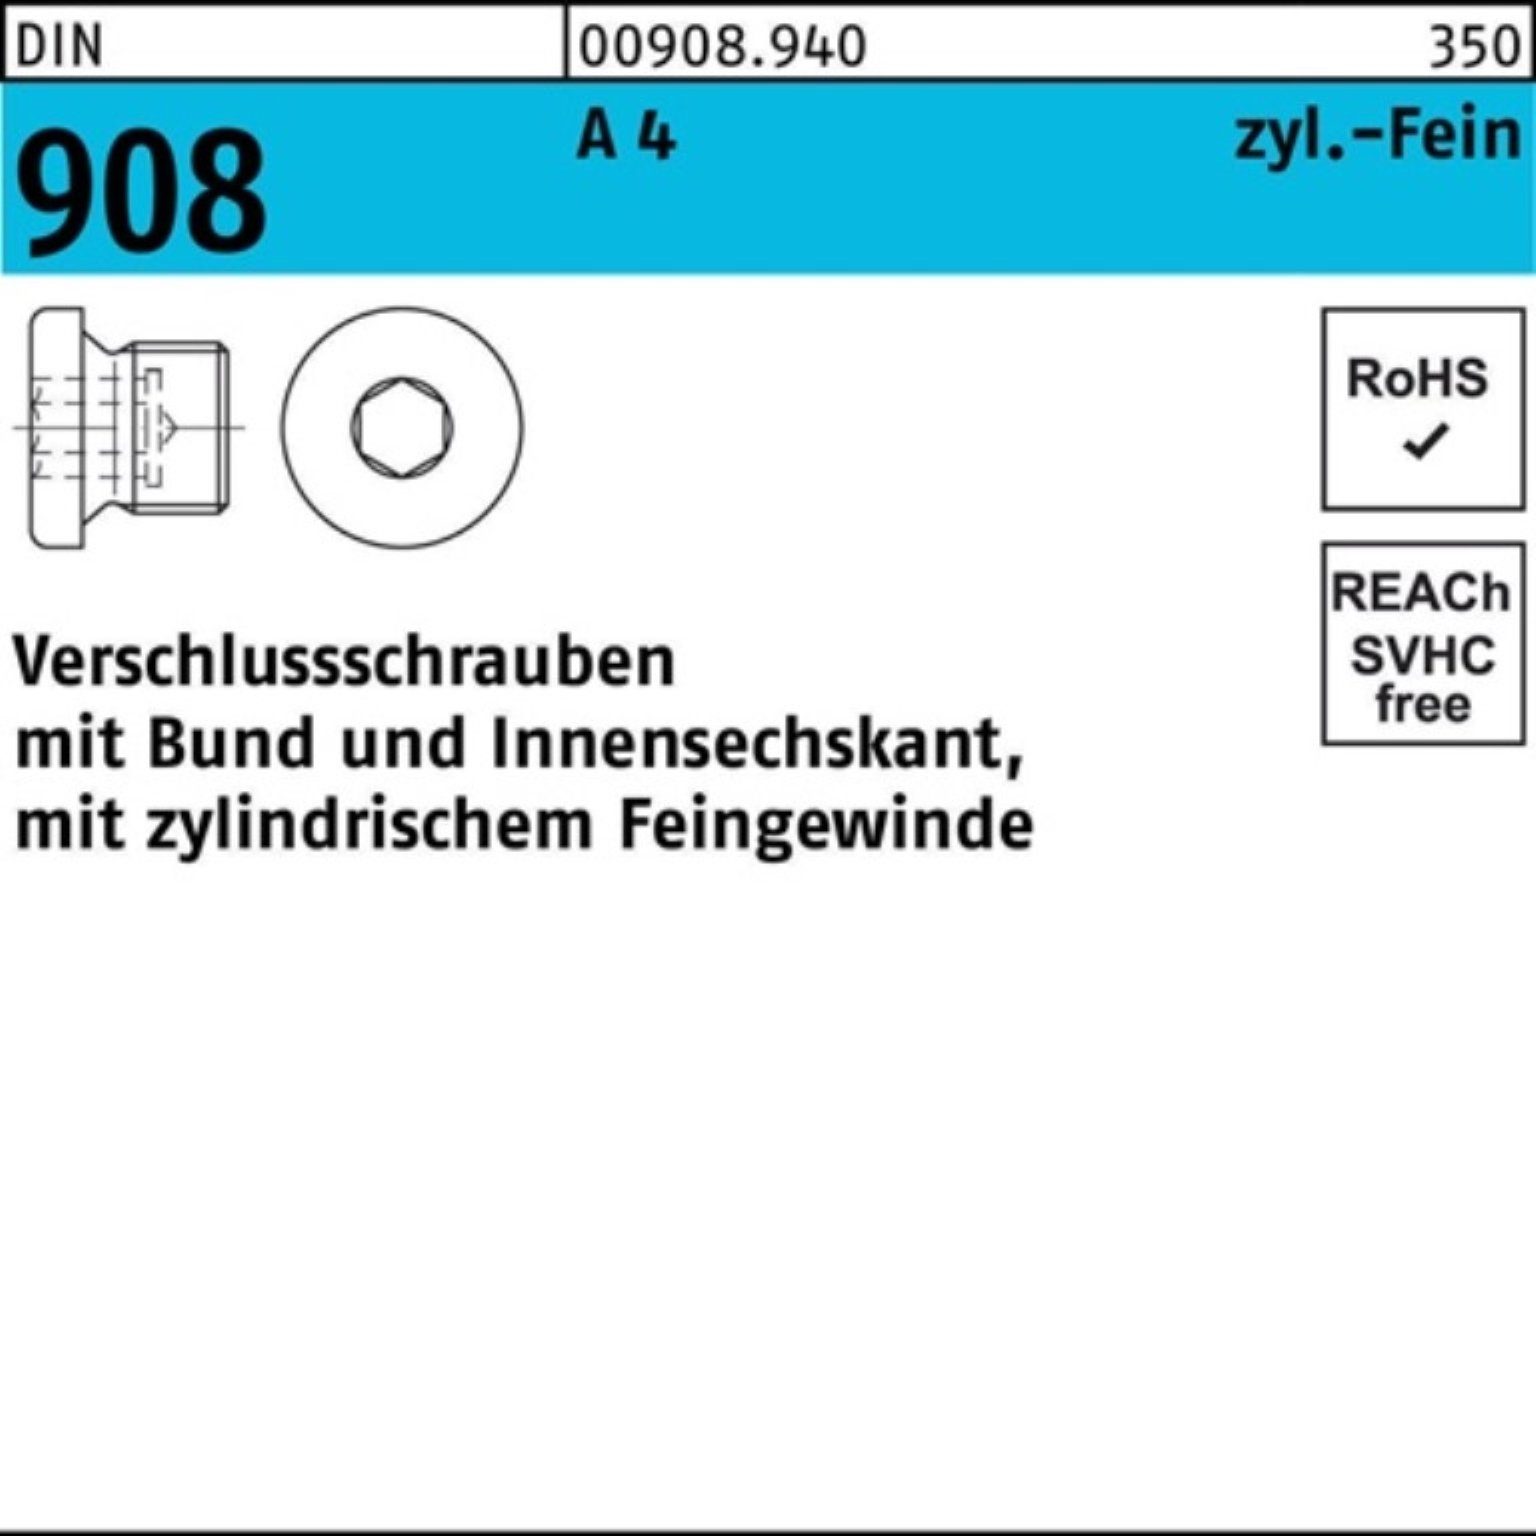 St Pack 100er 908 A 100 Reyher 4 Verschlußschraube Bund/Innen-6kt M8x DIN Schraube 1